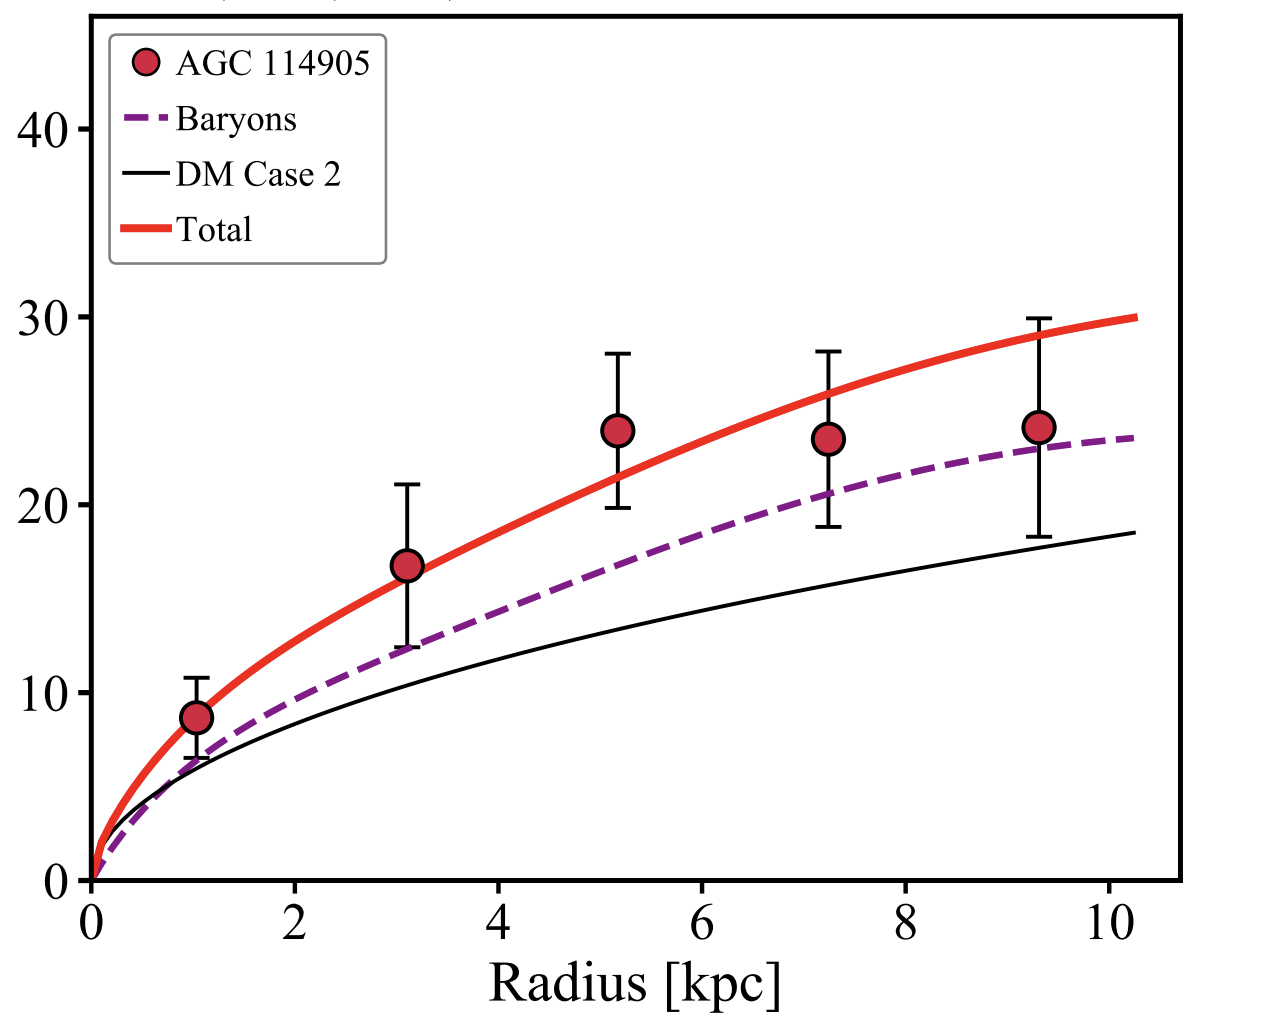 График зависимости скорости вращения материи в галактике AGC 114905 от расстояния до ее центра. Красные кружки обозначают данные наблюдений, а линии - вклад в эту скорость барионов (фиолетовая пунктирная линия), темной материи (черная сплошная линия) и их суммарный вклад (оранжевая линия), полученный в результате моделирования. Предоставлено: PEM Piña et al. / arXiv.org, 2021 г.